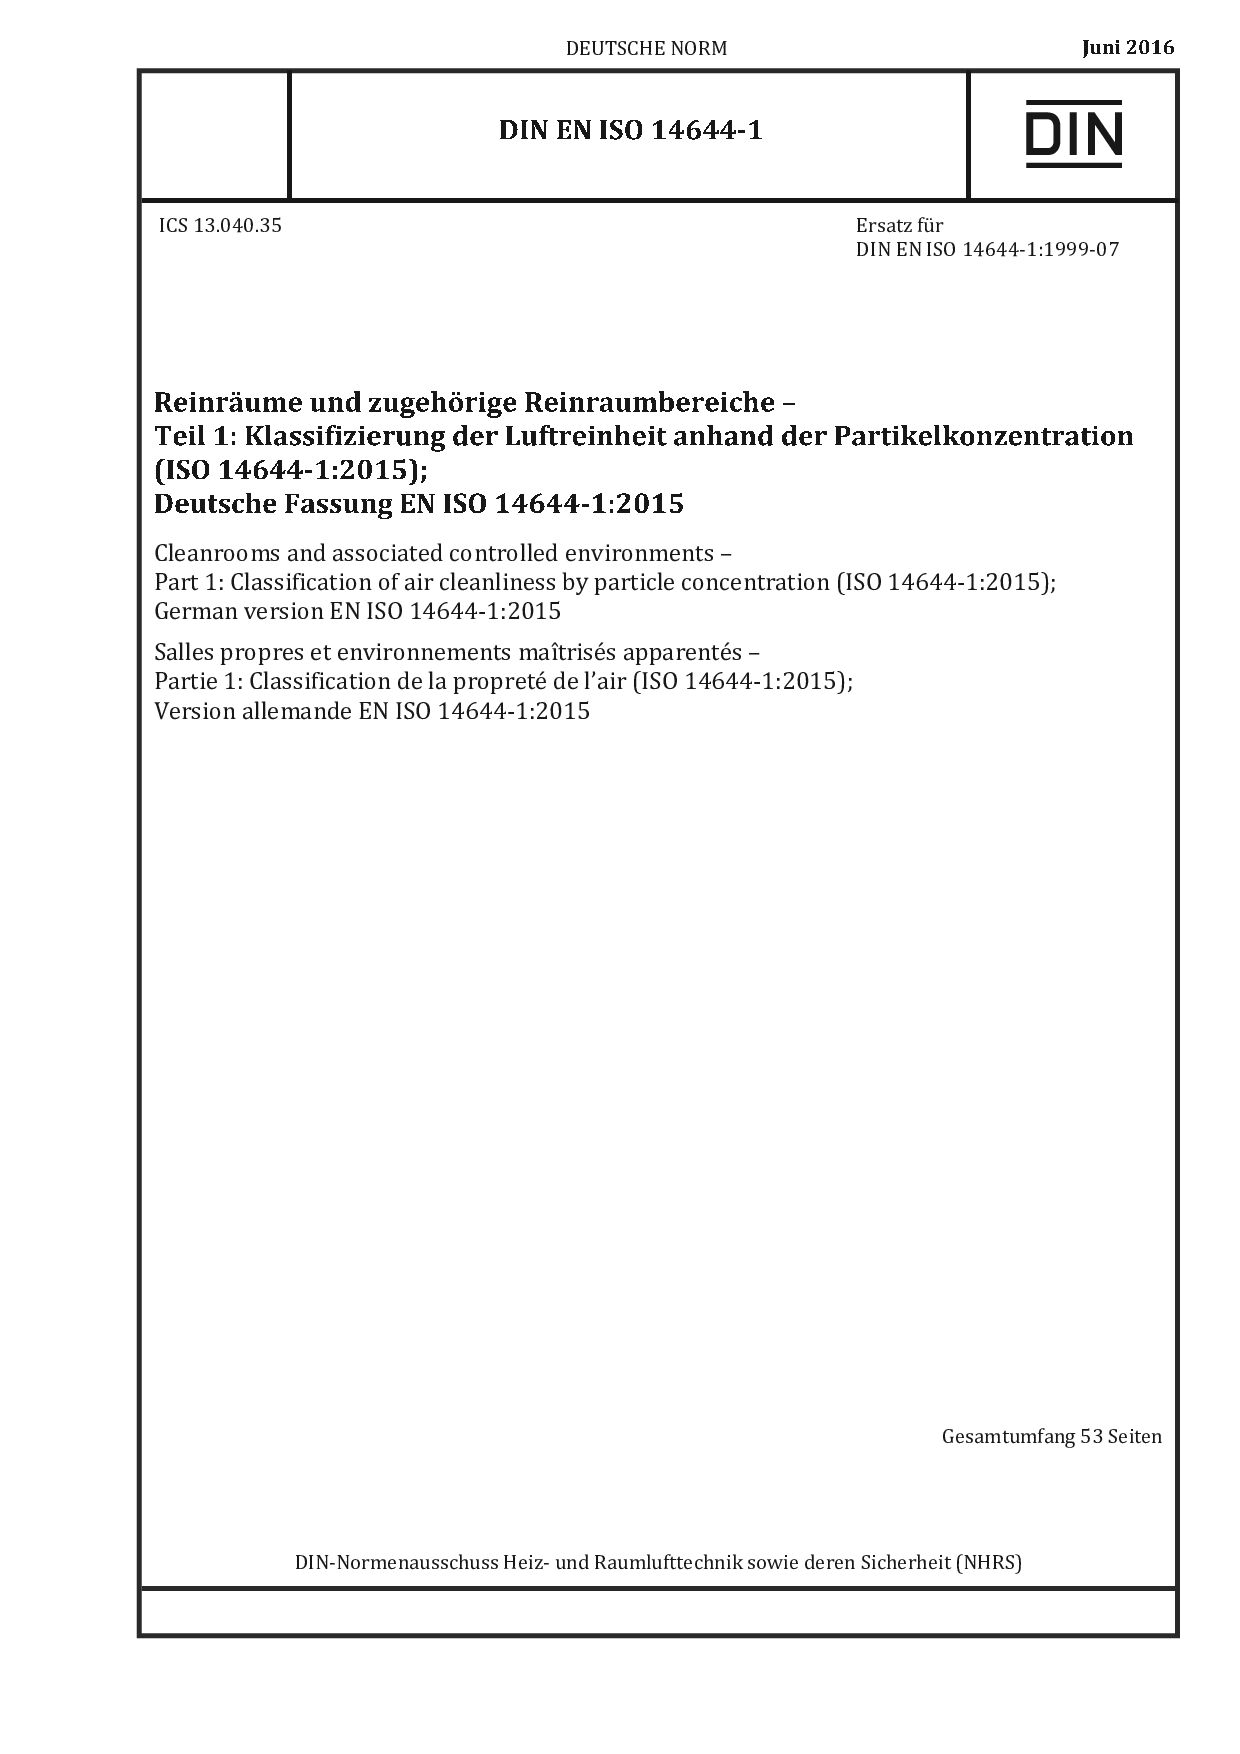 DIN EN ISO 14644-1:2016封面图